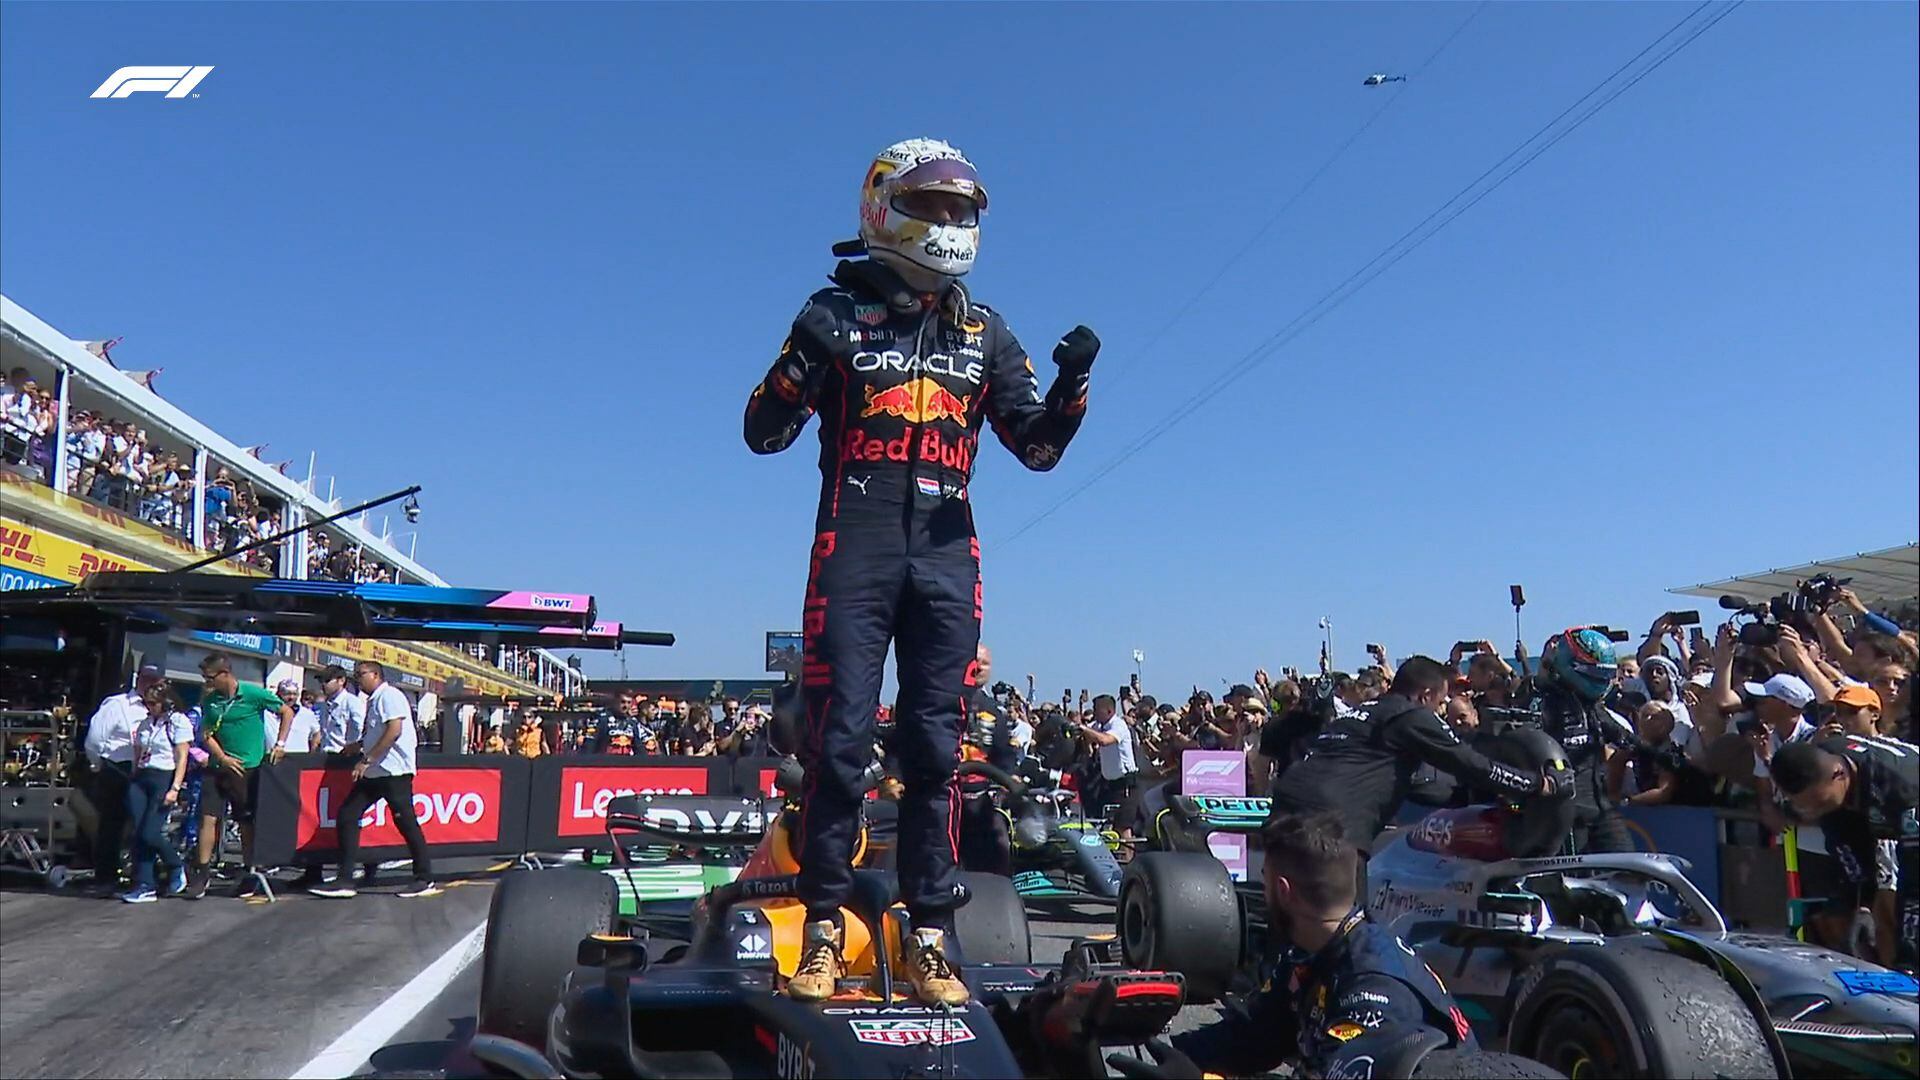 ‘Madrugan’ a ‘Checo’ y pierde el podio en el GP de Francia; Verstappen gana